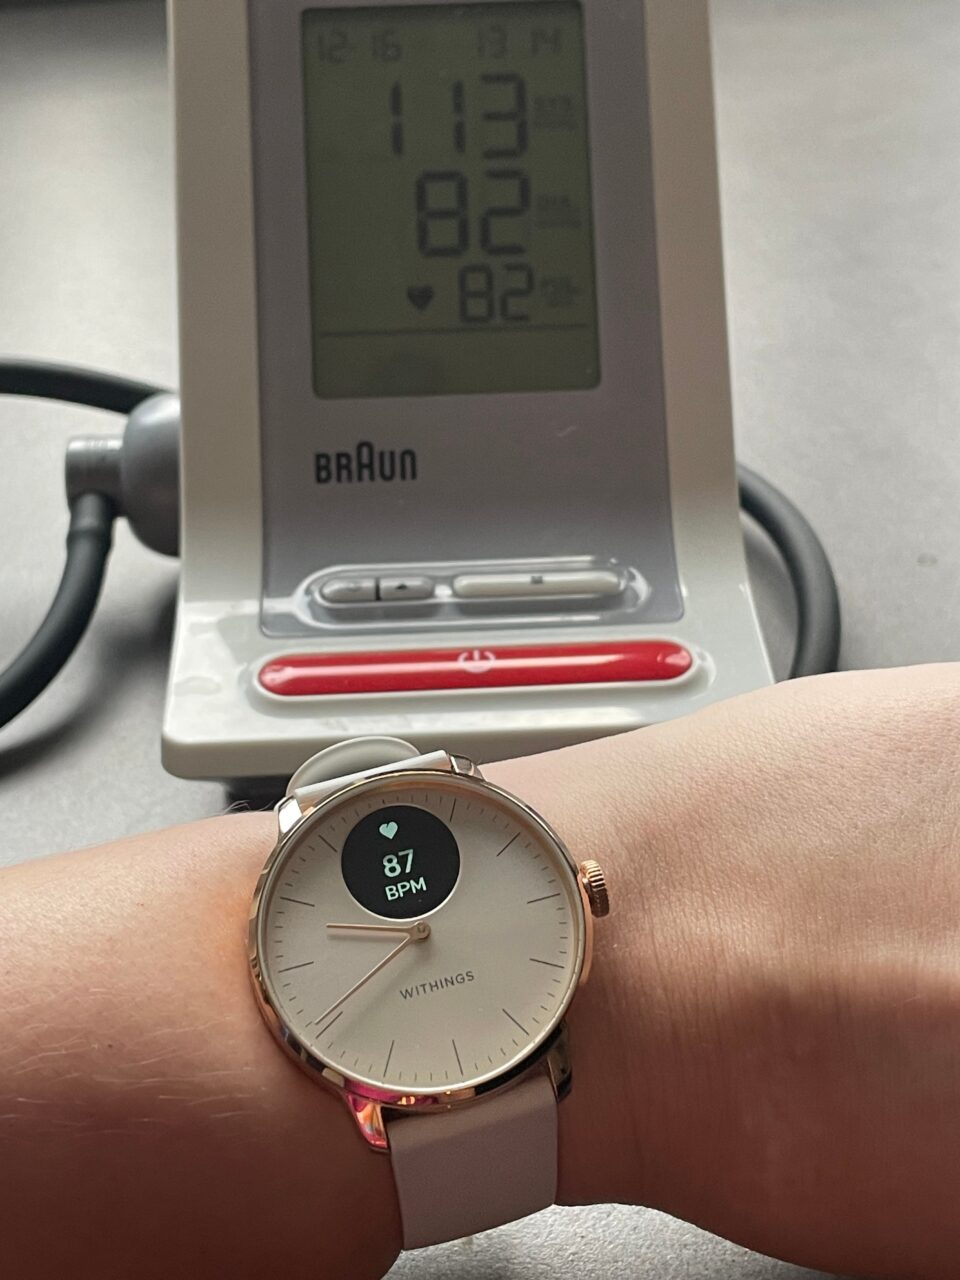 Nadgarstek z założonym smartwatchem Withings pokazującym tętno 87 BPM na pierwszym planie i ciśnieniomierz Braun w tle wyświetlający ciśnienie krwi 113 na 82 oraz tętno 82.